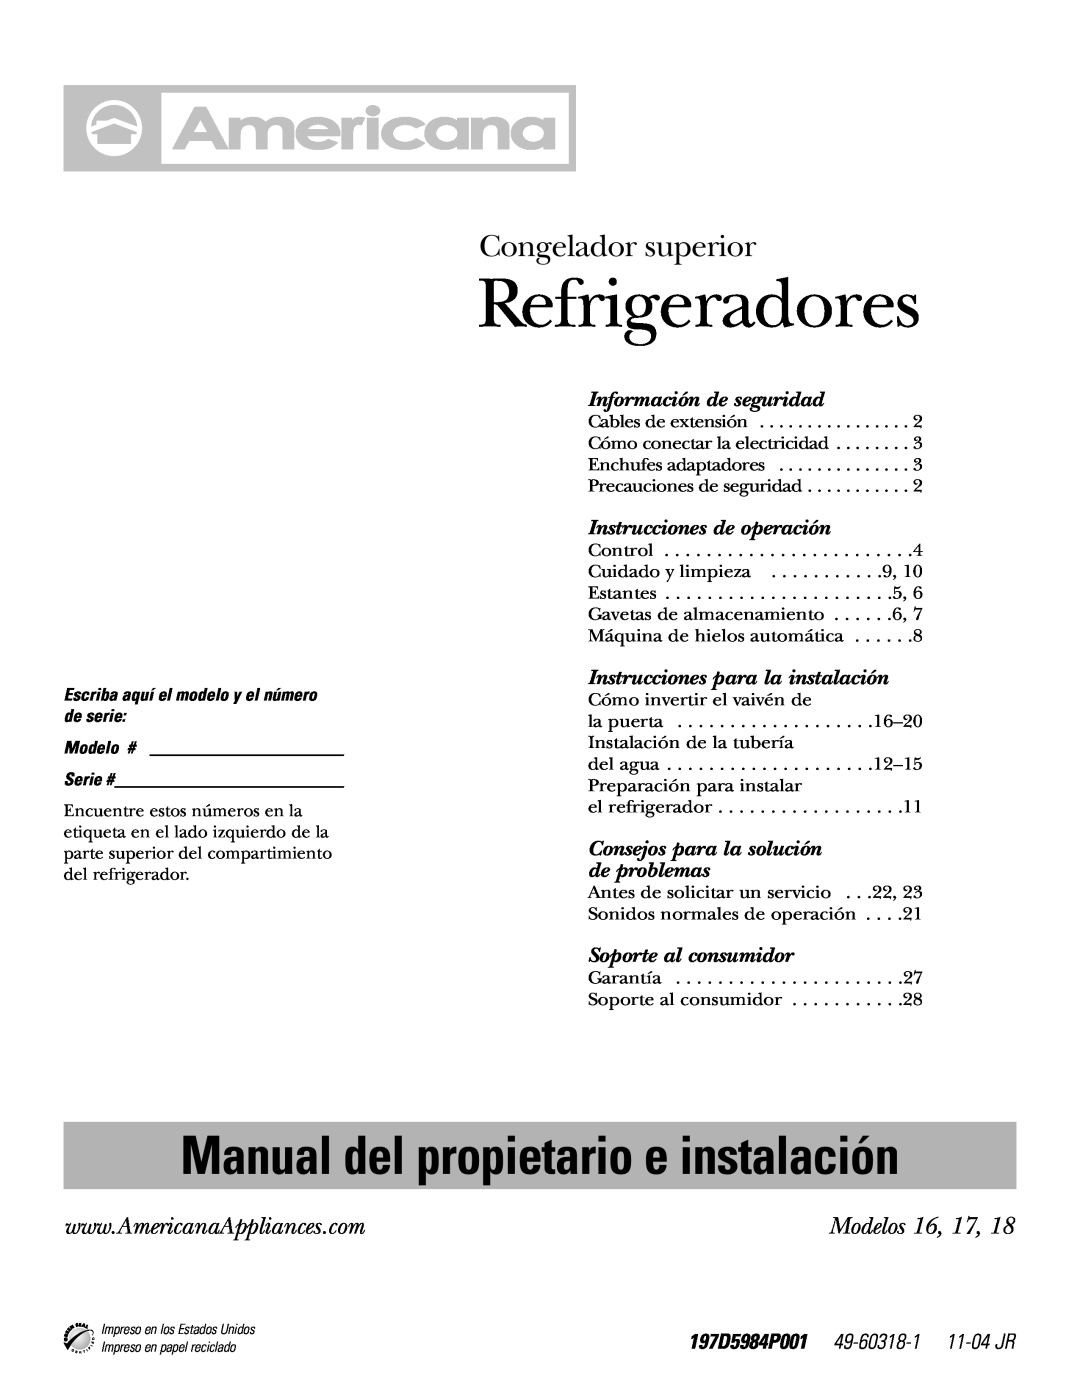 Americana Appliances 18 Refrigeradores, Congelador superior, Modelos 16, 17, Manual del propietario e instalación 